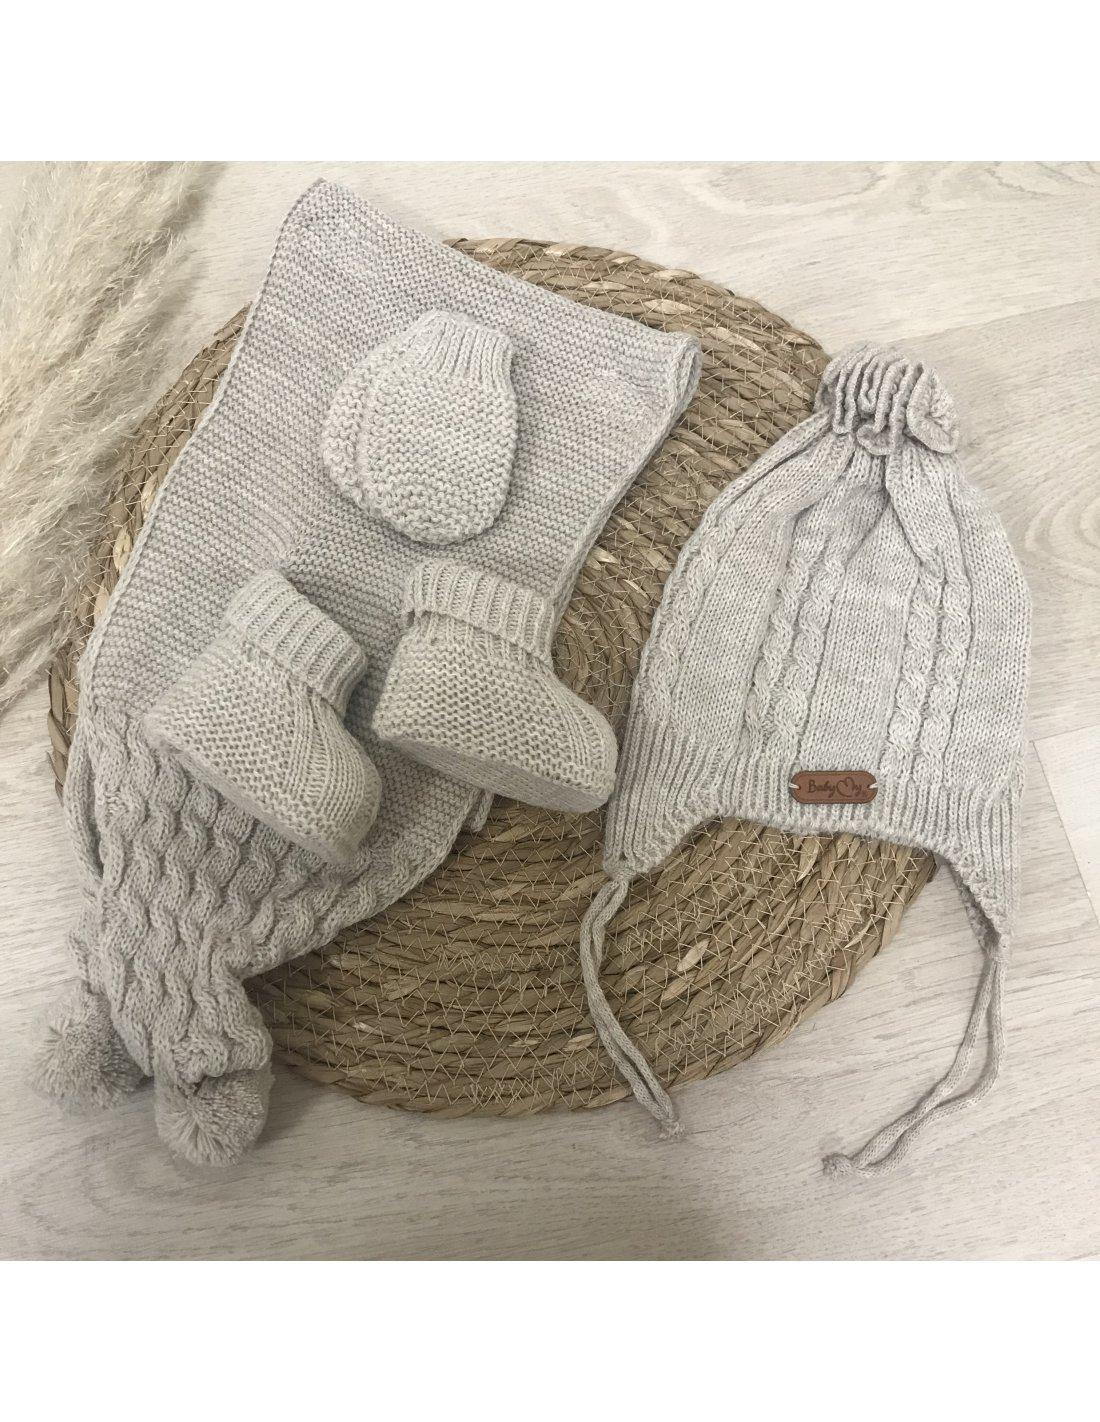 Moufles bébé fille en tricot